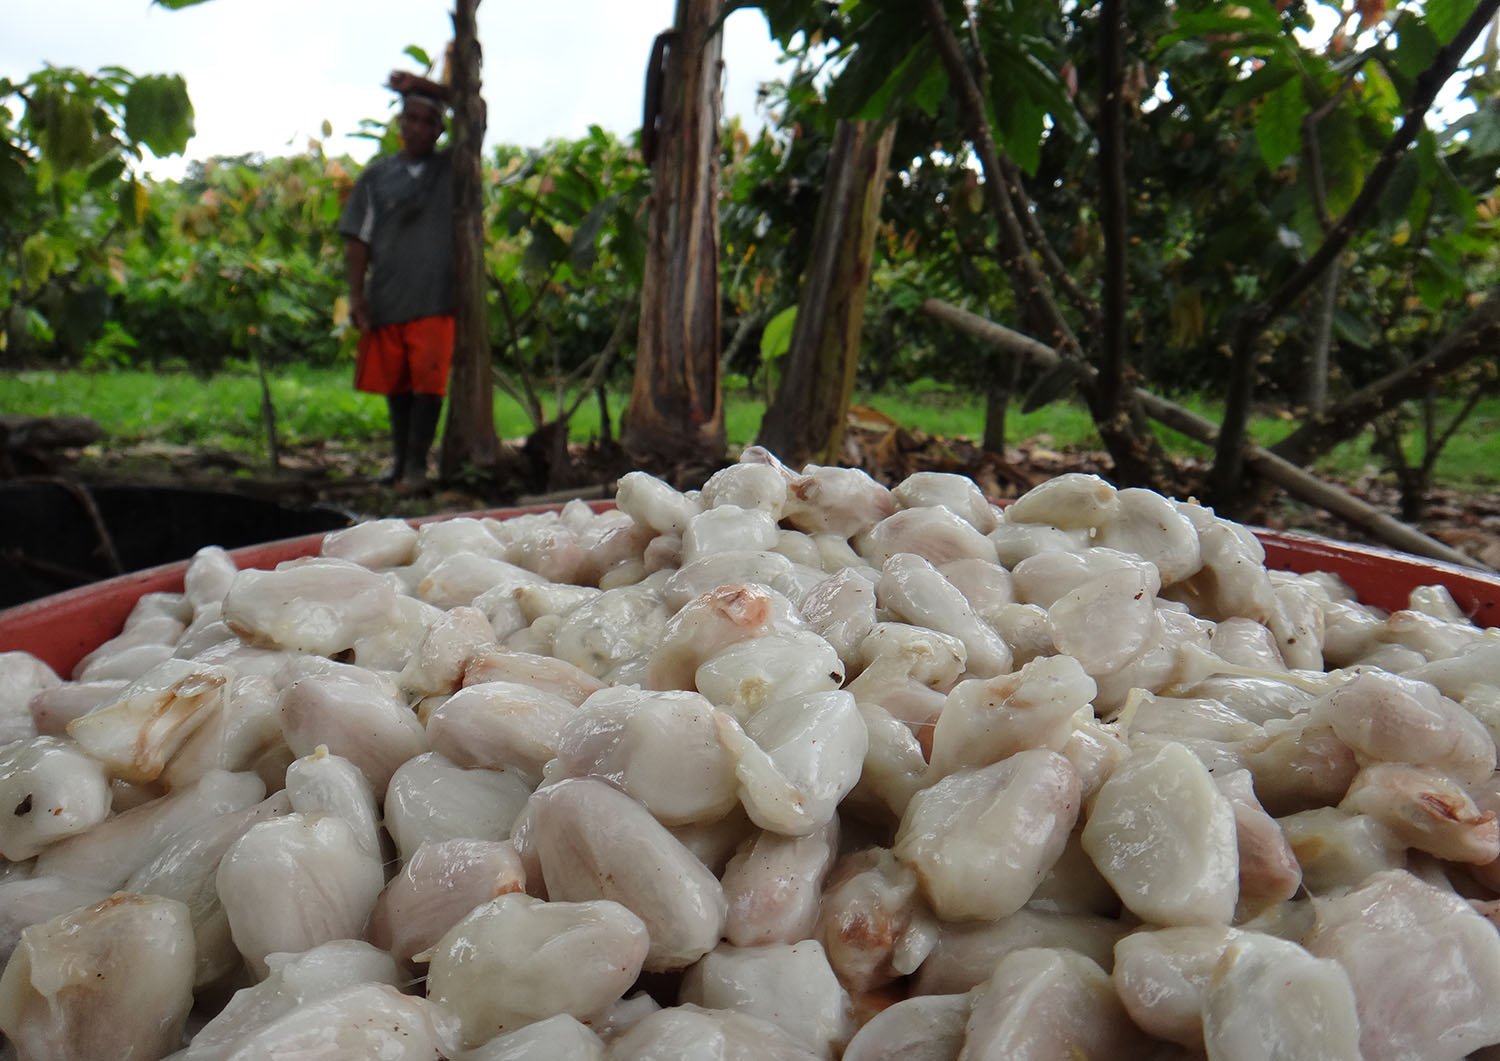 Productores de cacao de Comercio Justo en Ecuador, financiados por Oikocredit bajo criterios de banca ética.